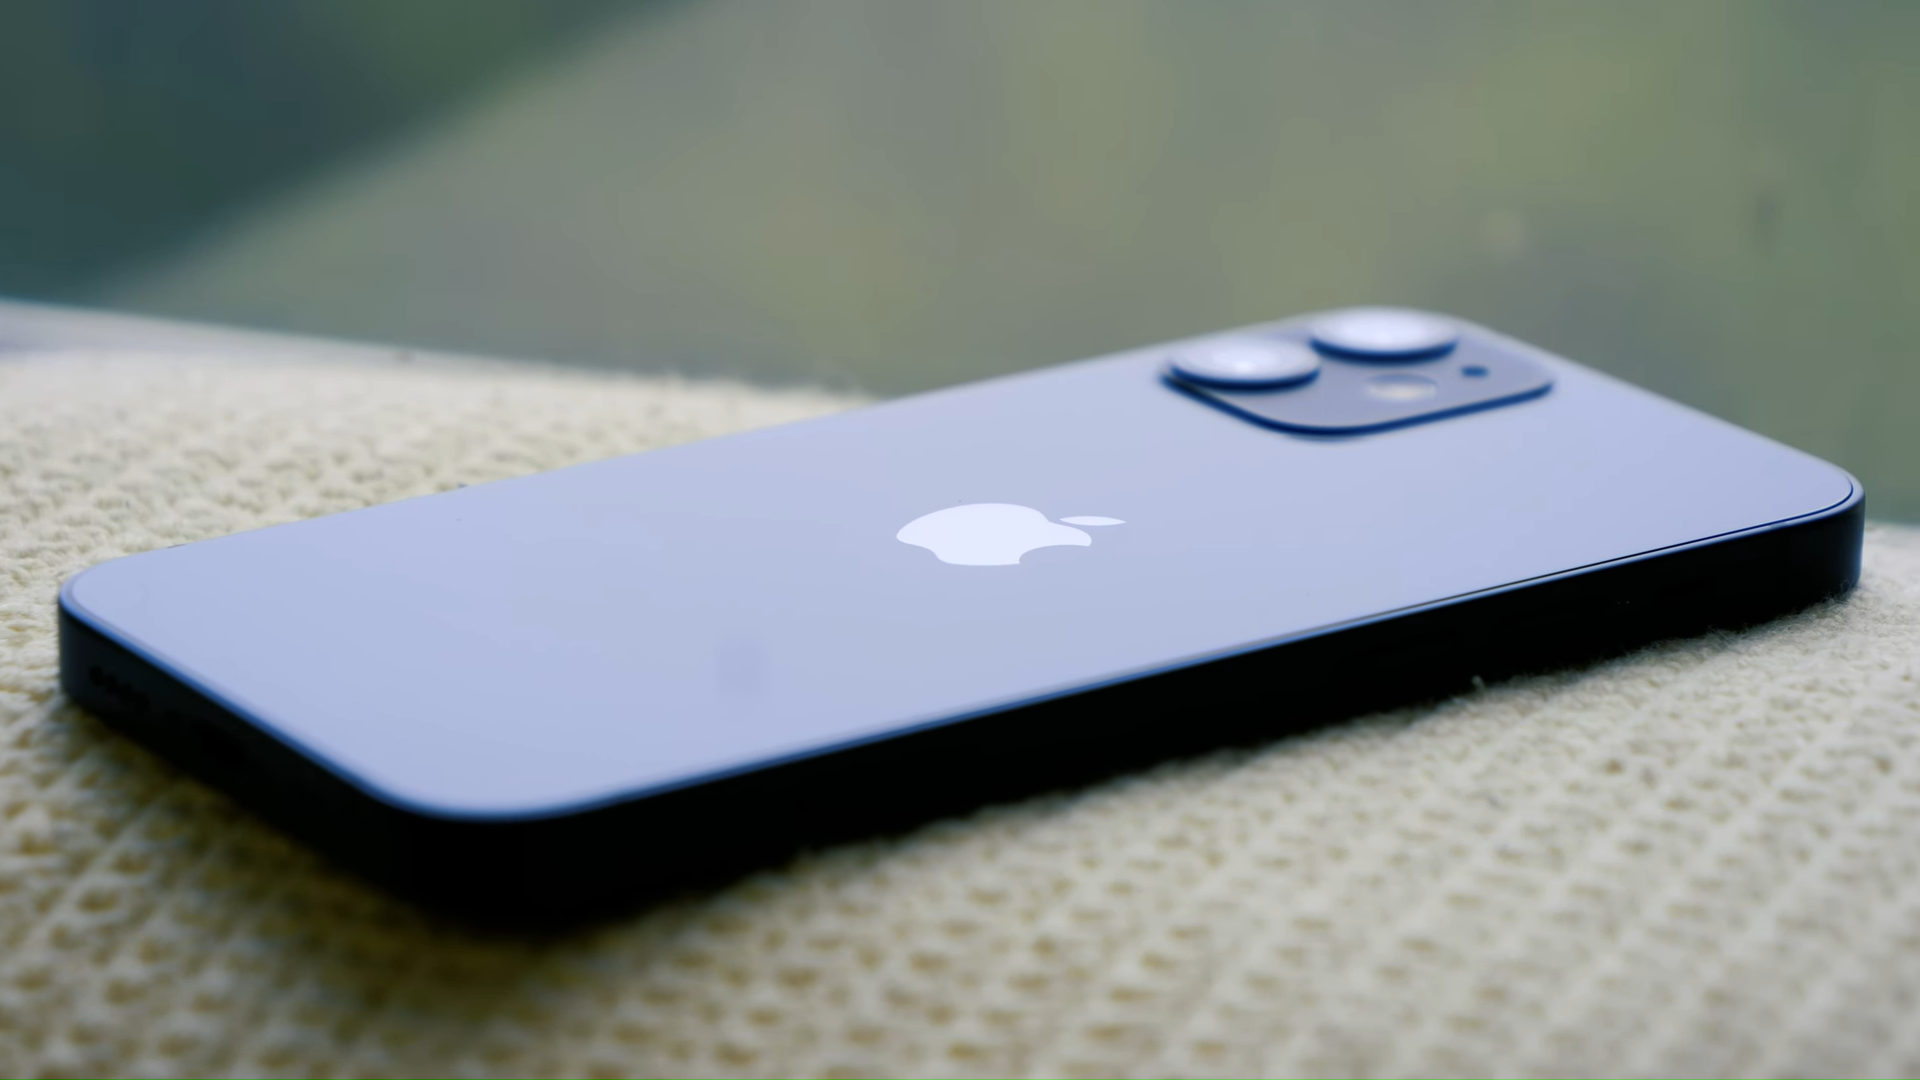 Бразилия оштрафовала Apple на $2 млн за отсутствие зарядки в коробке с iPhone 12